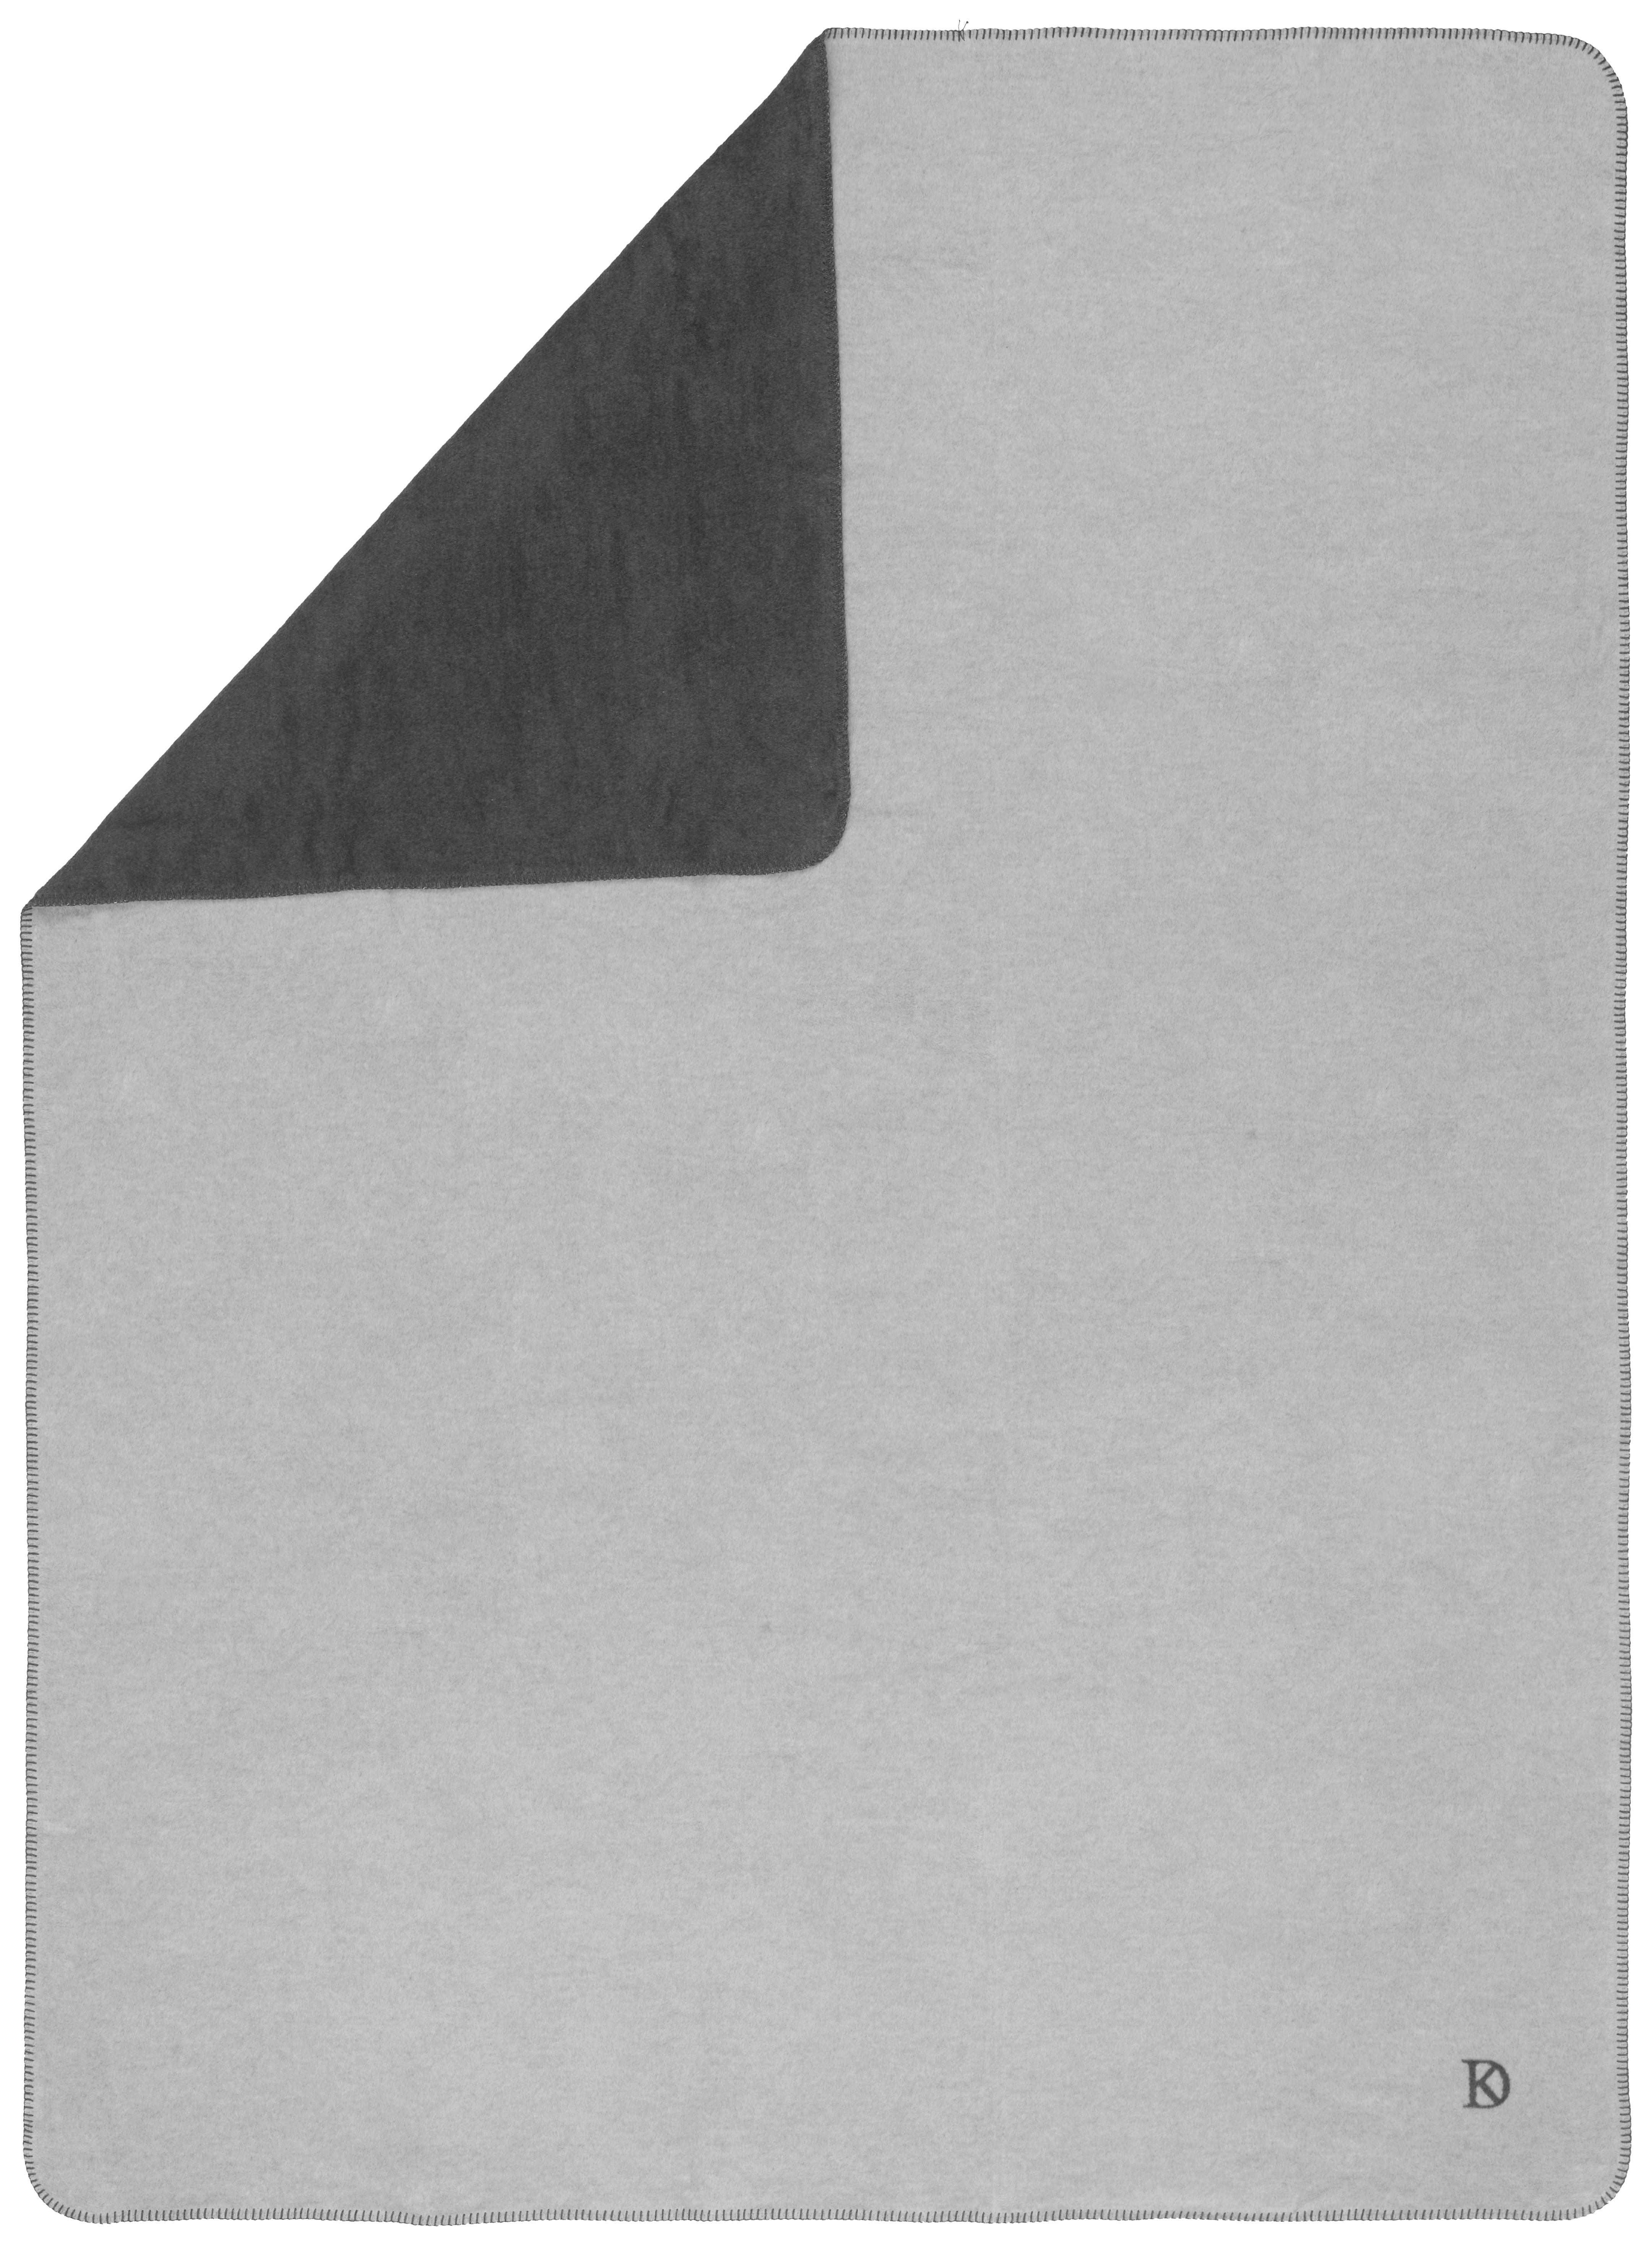 WOHNDECKE FRAME 150/200 cm  - Anthrazit/Silberfarben, Design, Textil (150/200cm) - Dieter Knoll